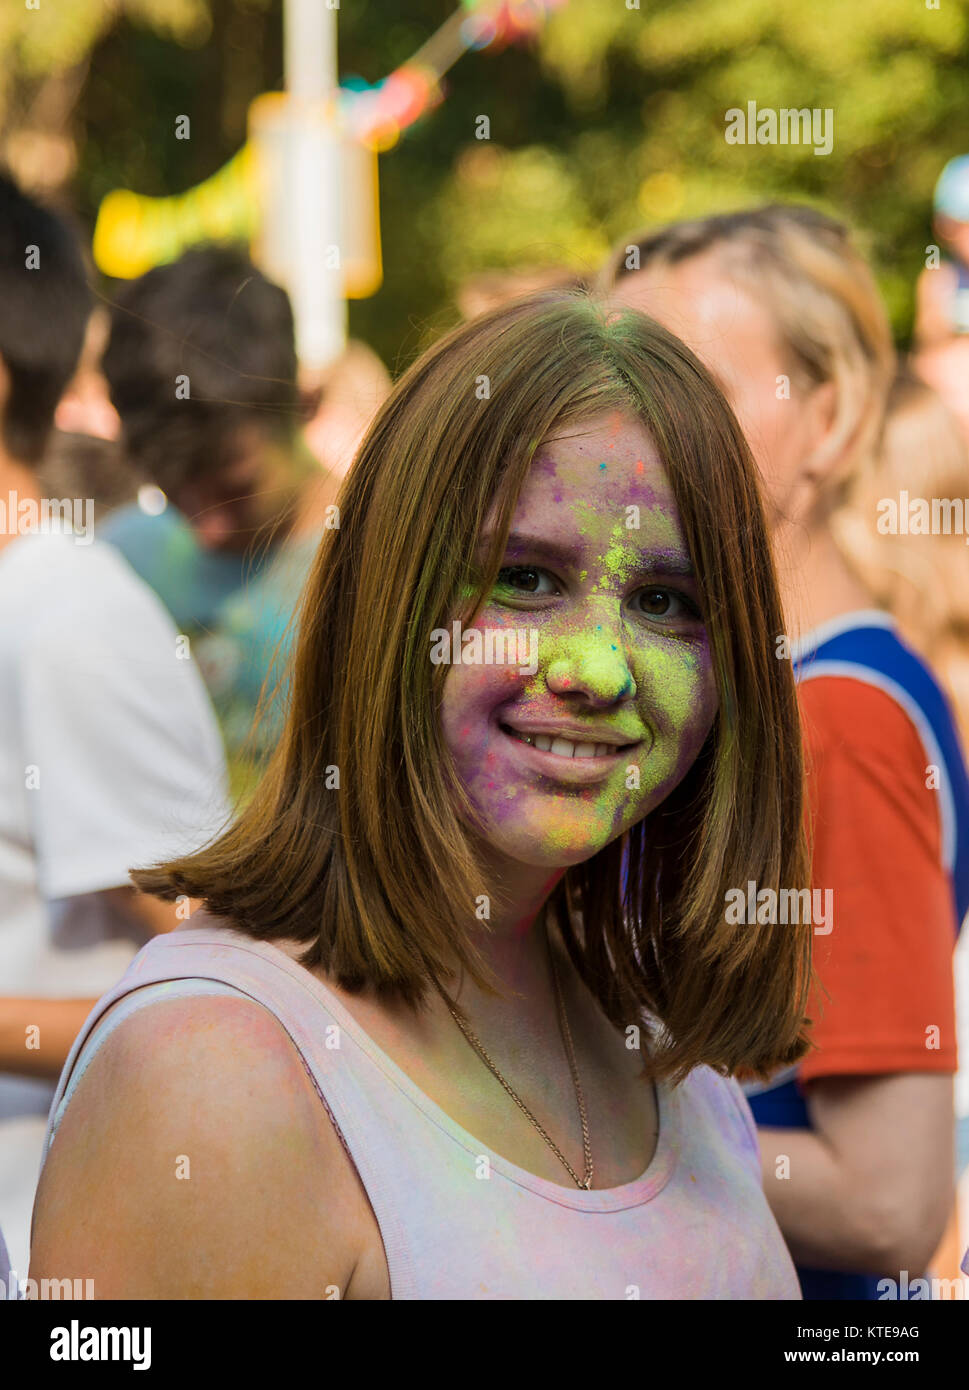 Lemberg, Ukraine - 30. August 2015: Mädchen haben Spaß während des Festivals der Farbe in einem Stadtpark in Lemberg. Stockfoto